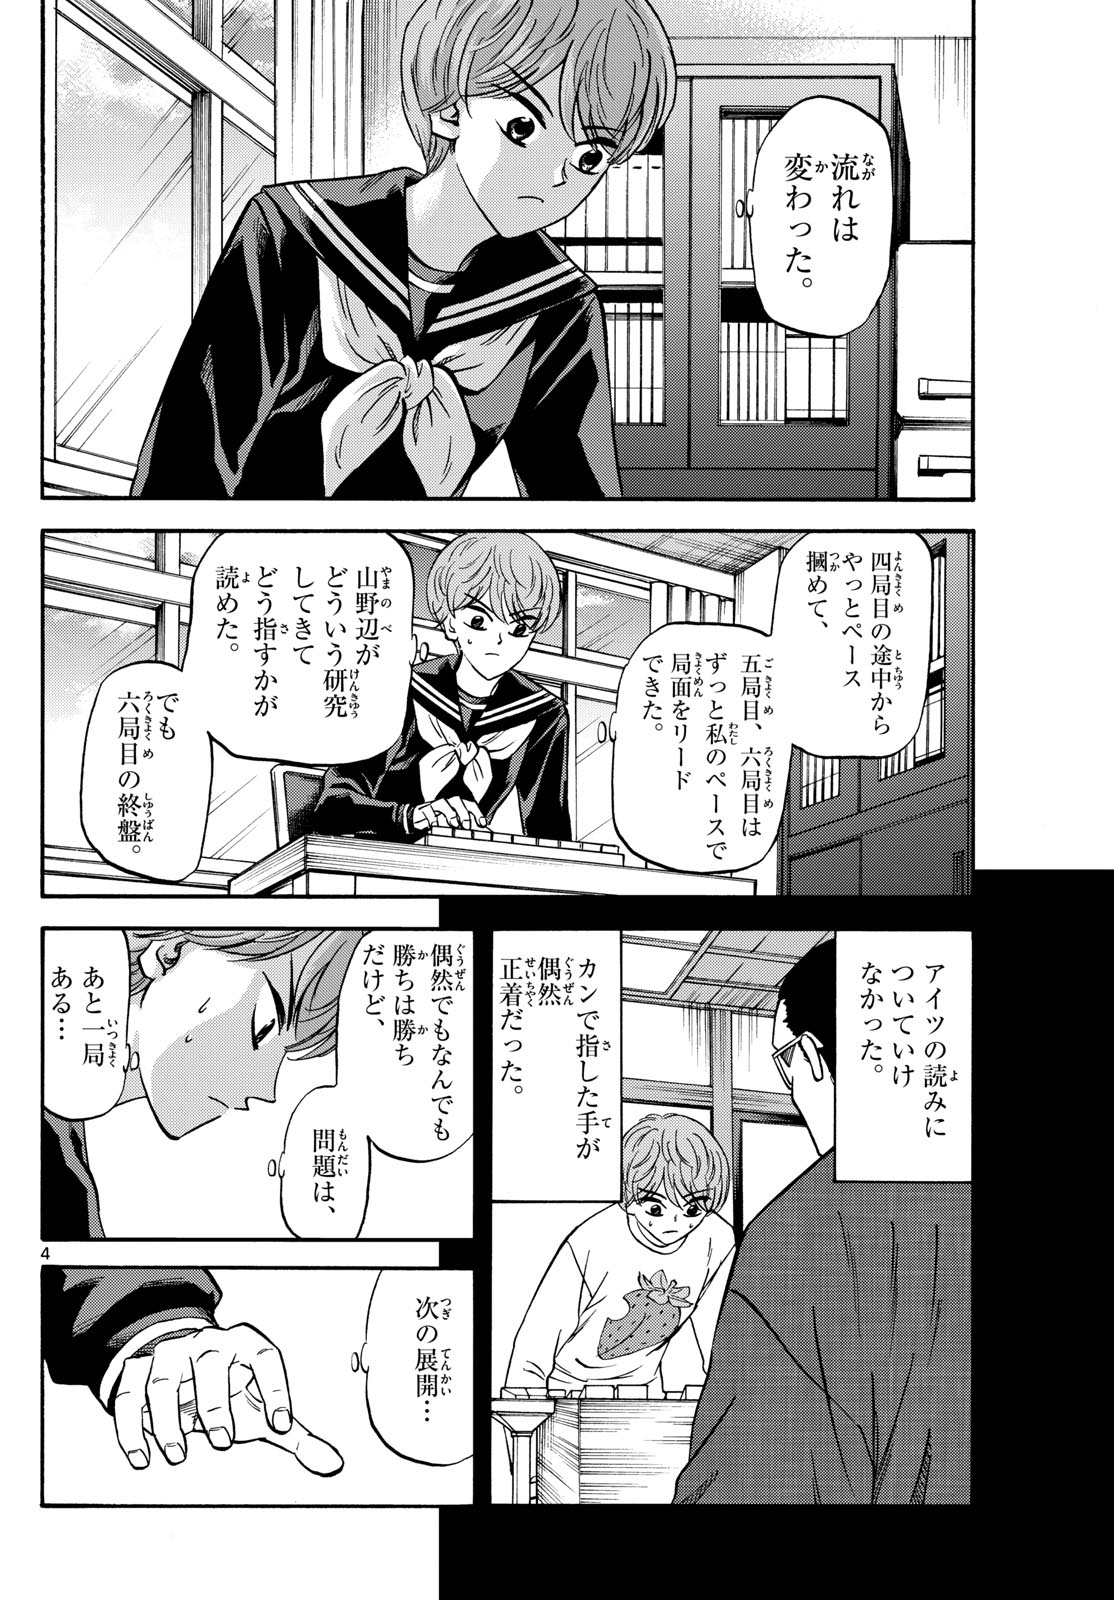 Tatsu to Ichigo - Chapter 171 - Page 4